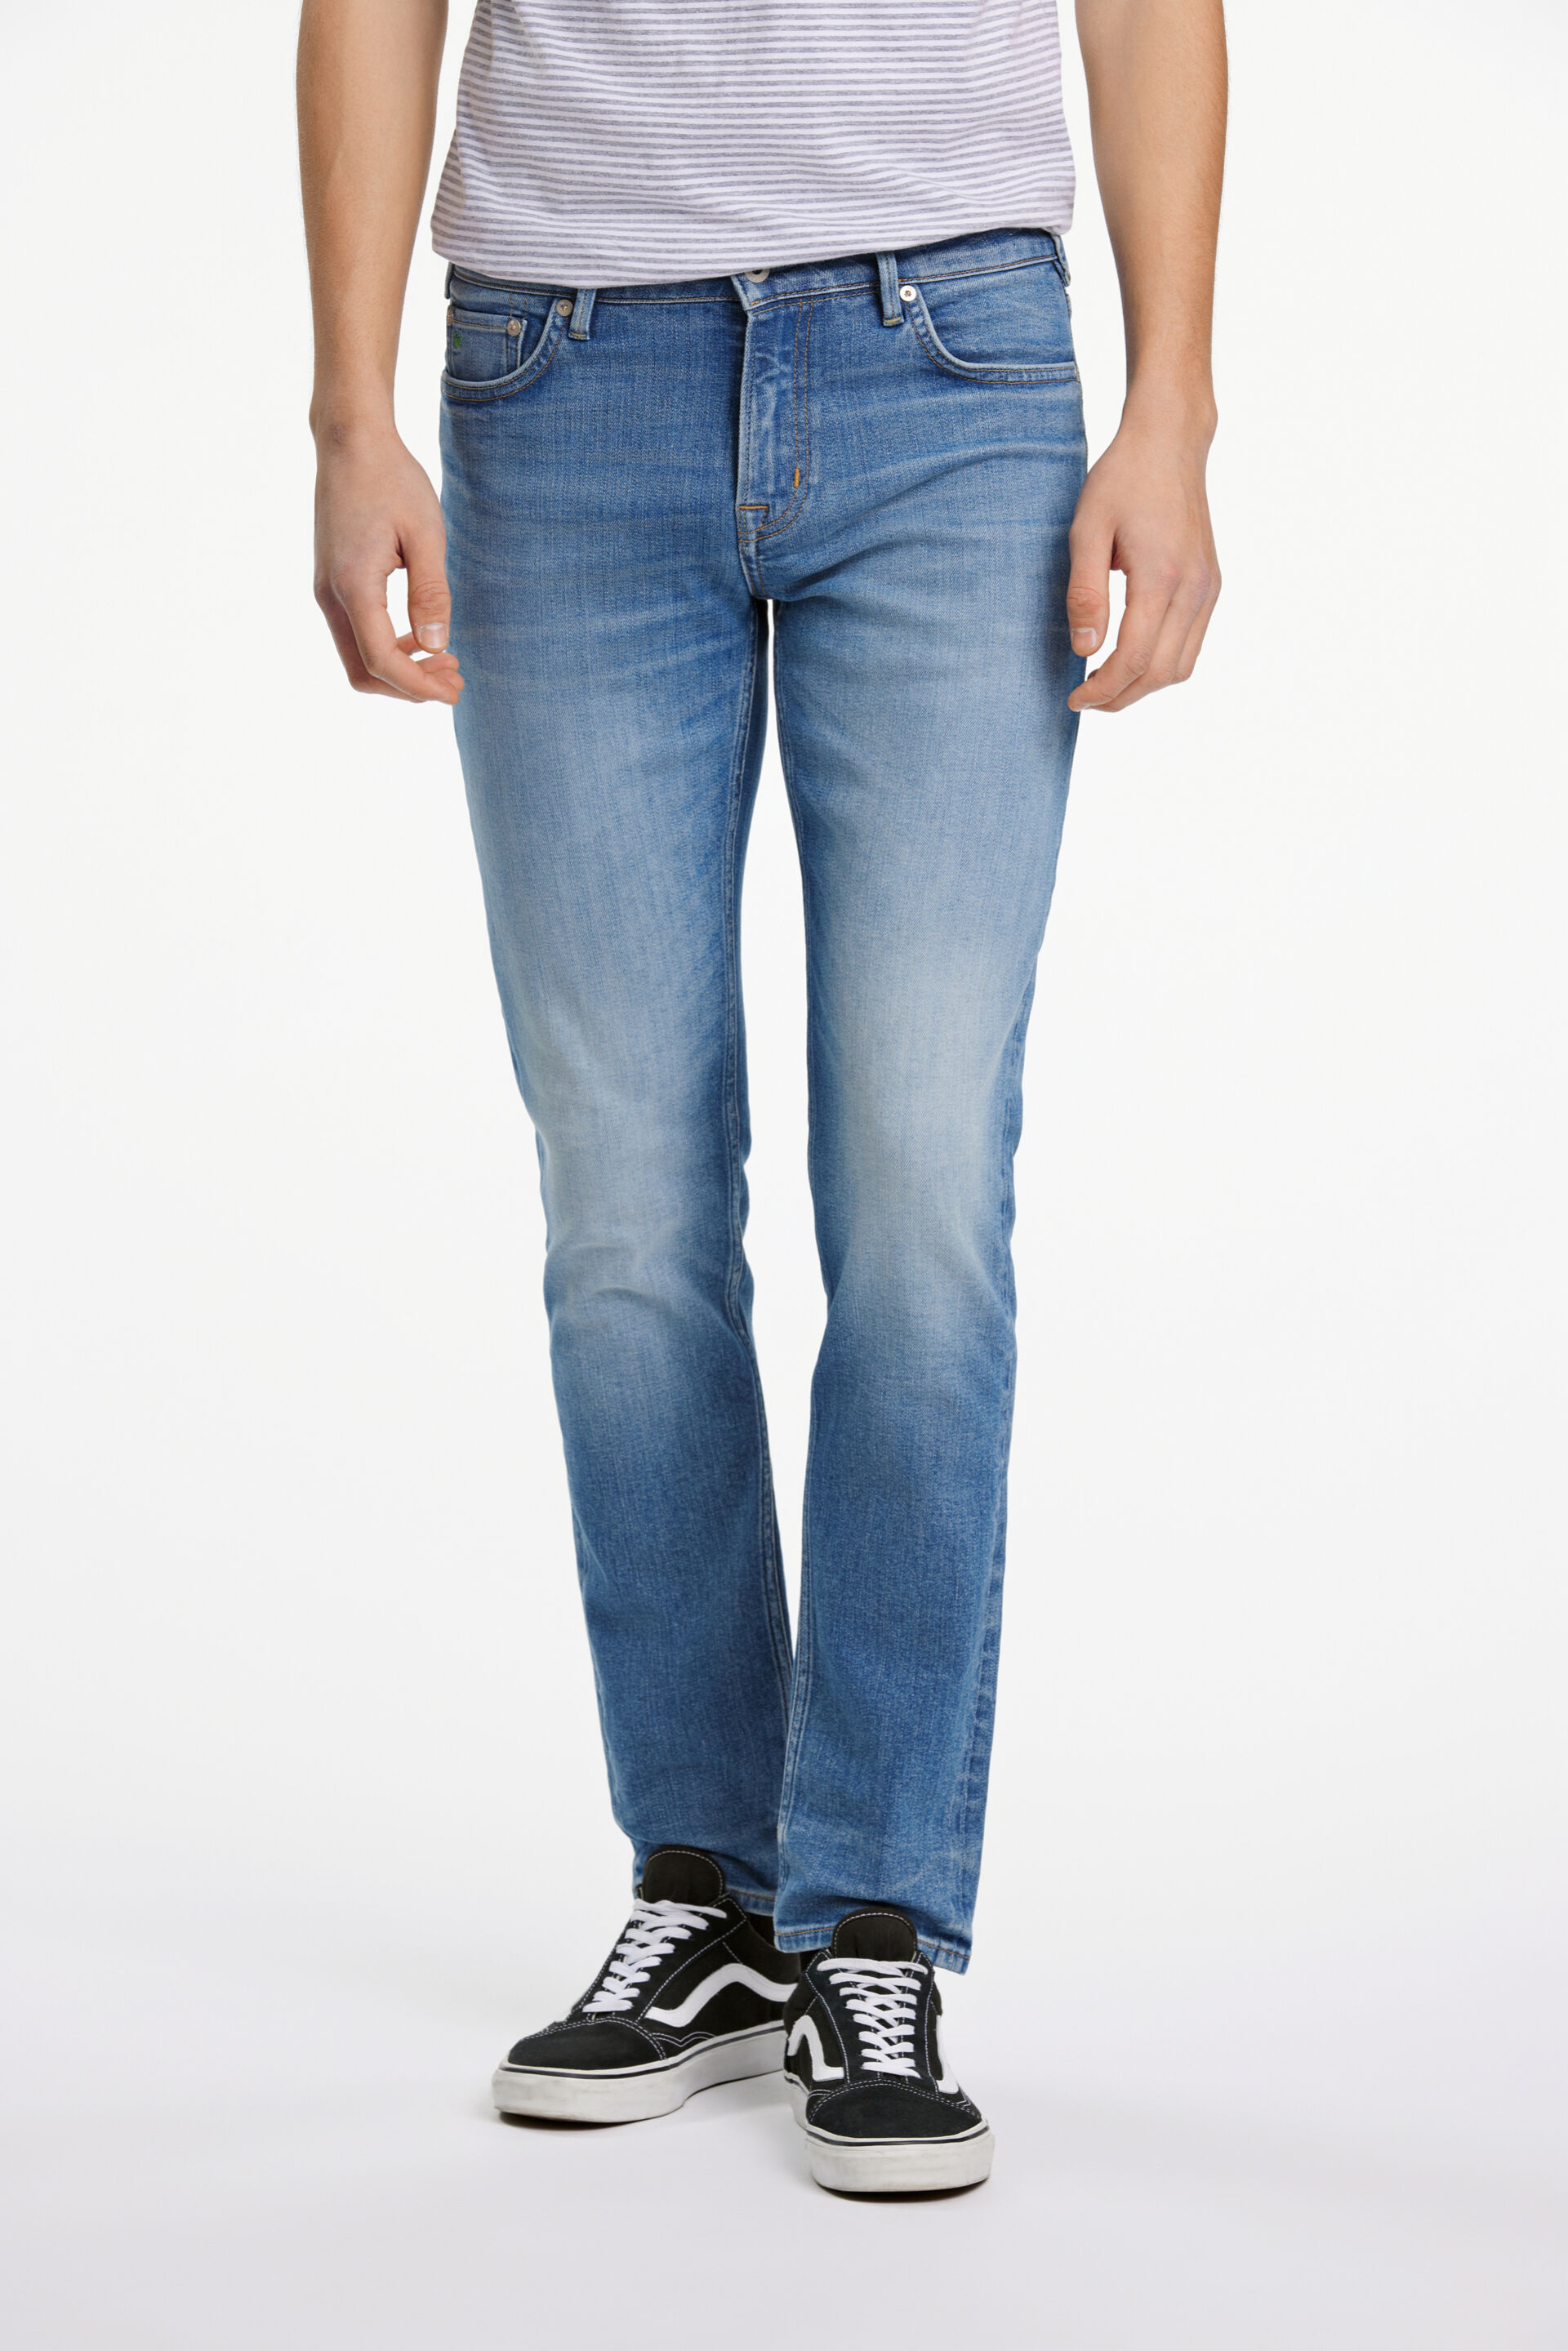 Junk de Luxe  Jeans 60-022016